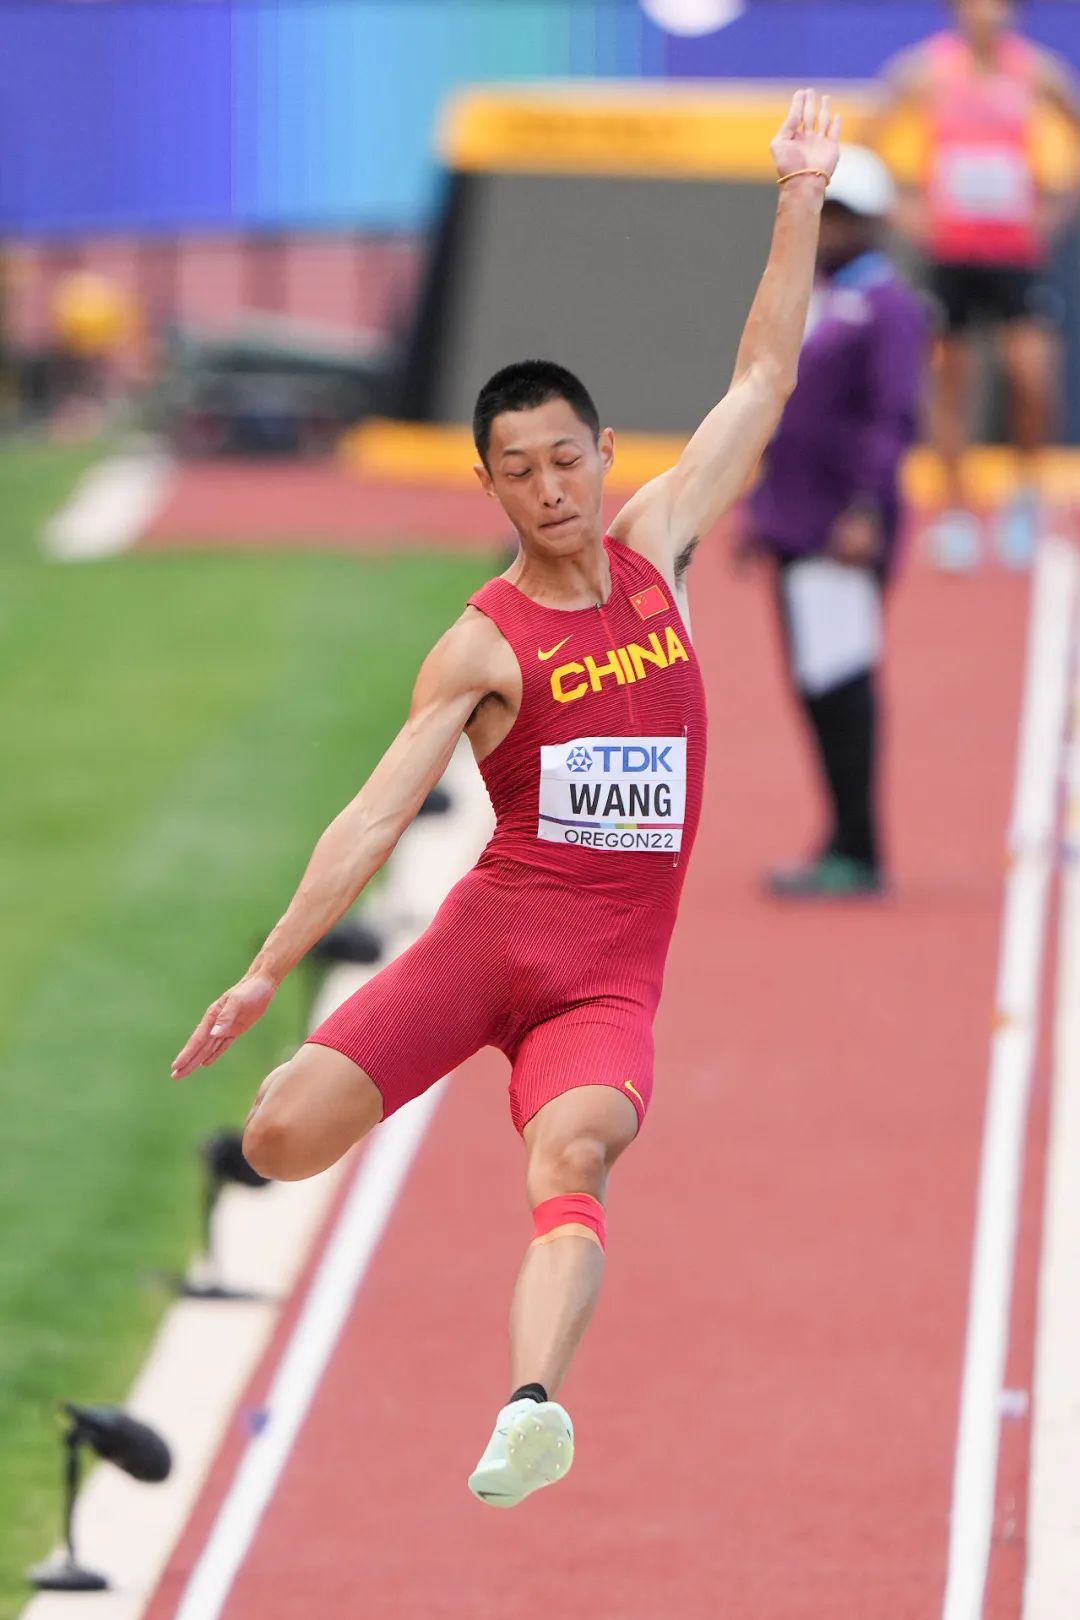 优享资讯 | 王嘉男为中国首夺男子跳远世锦赛冠军